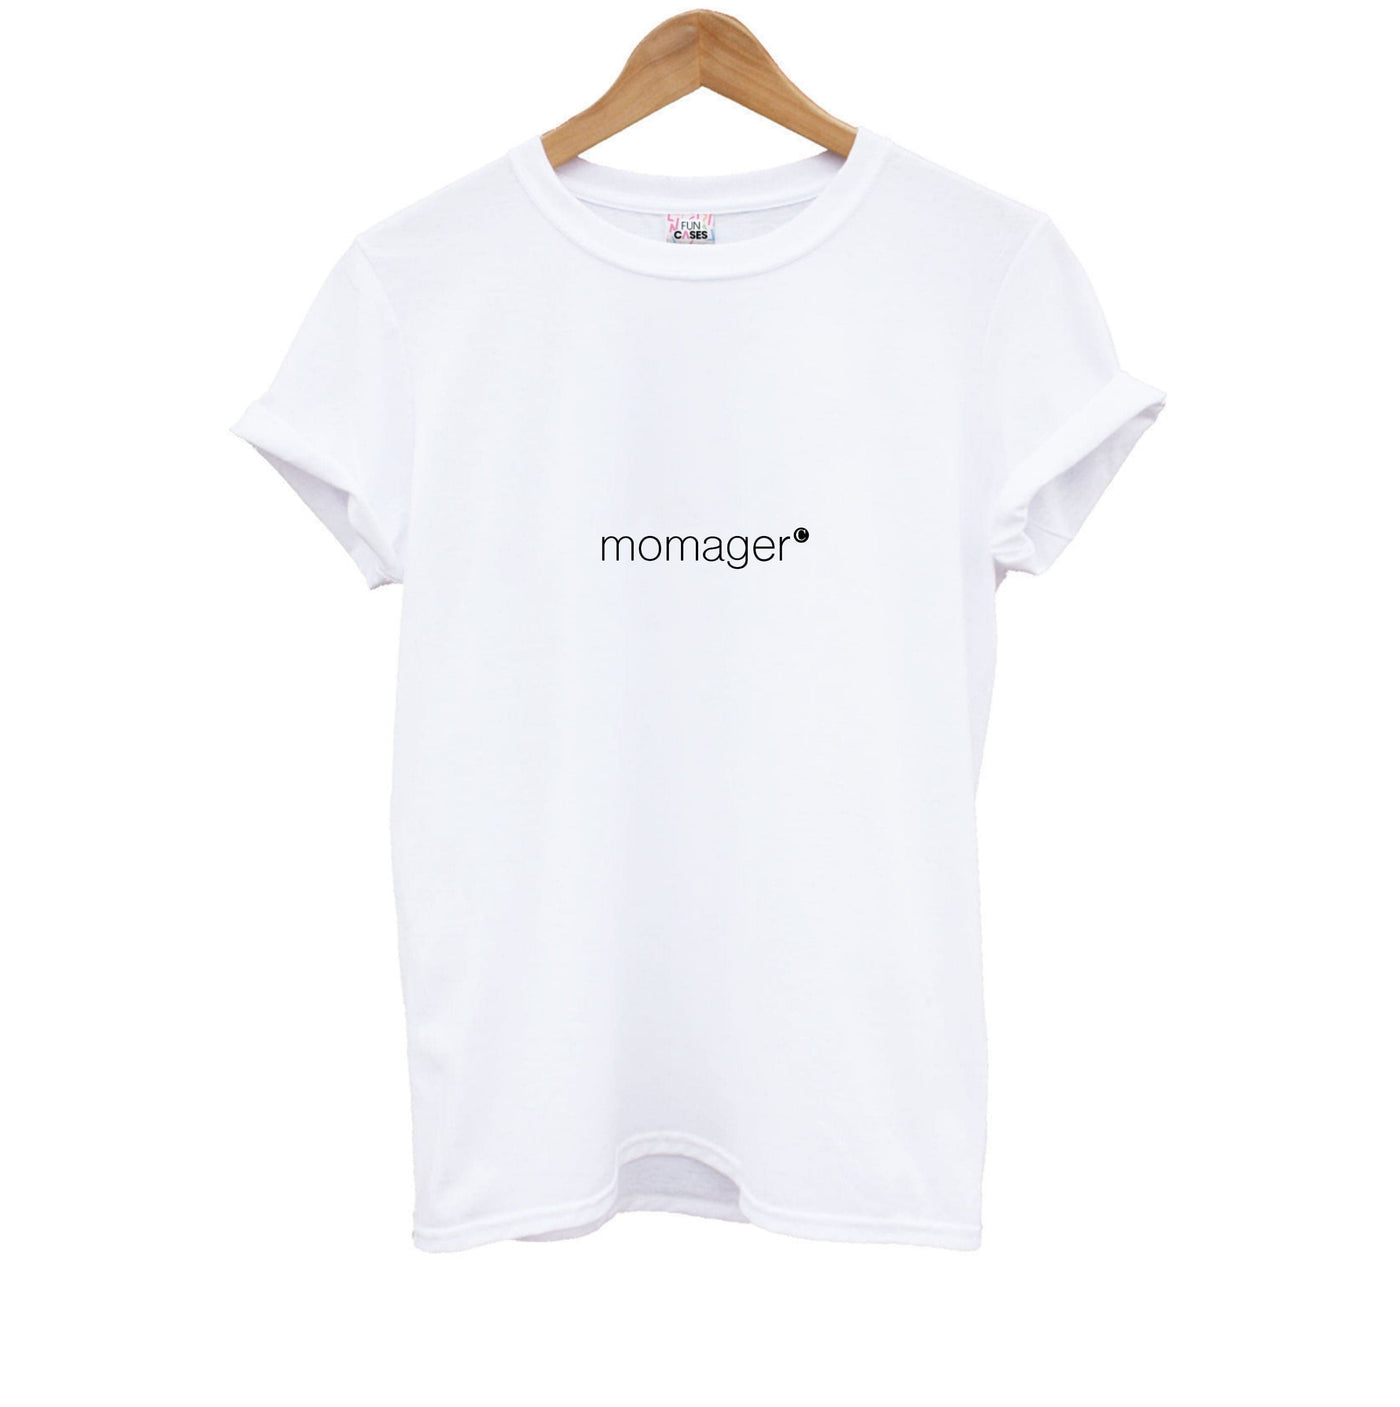 Momager - Kris Jenner Kids T-Shirt